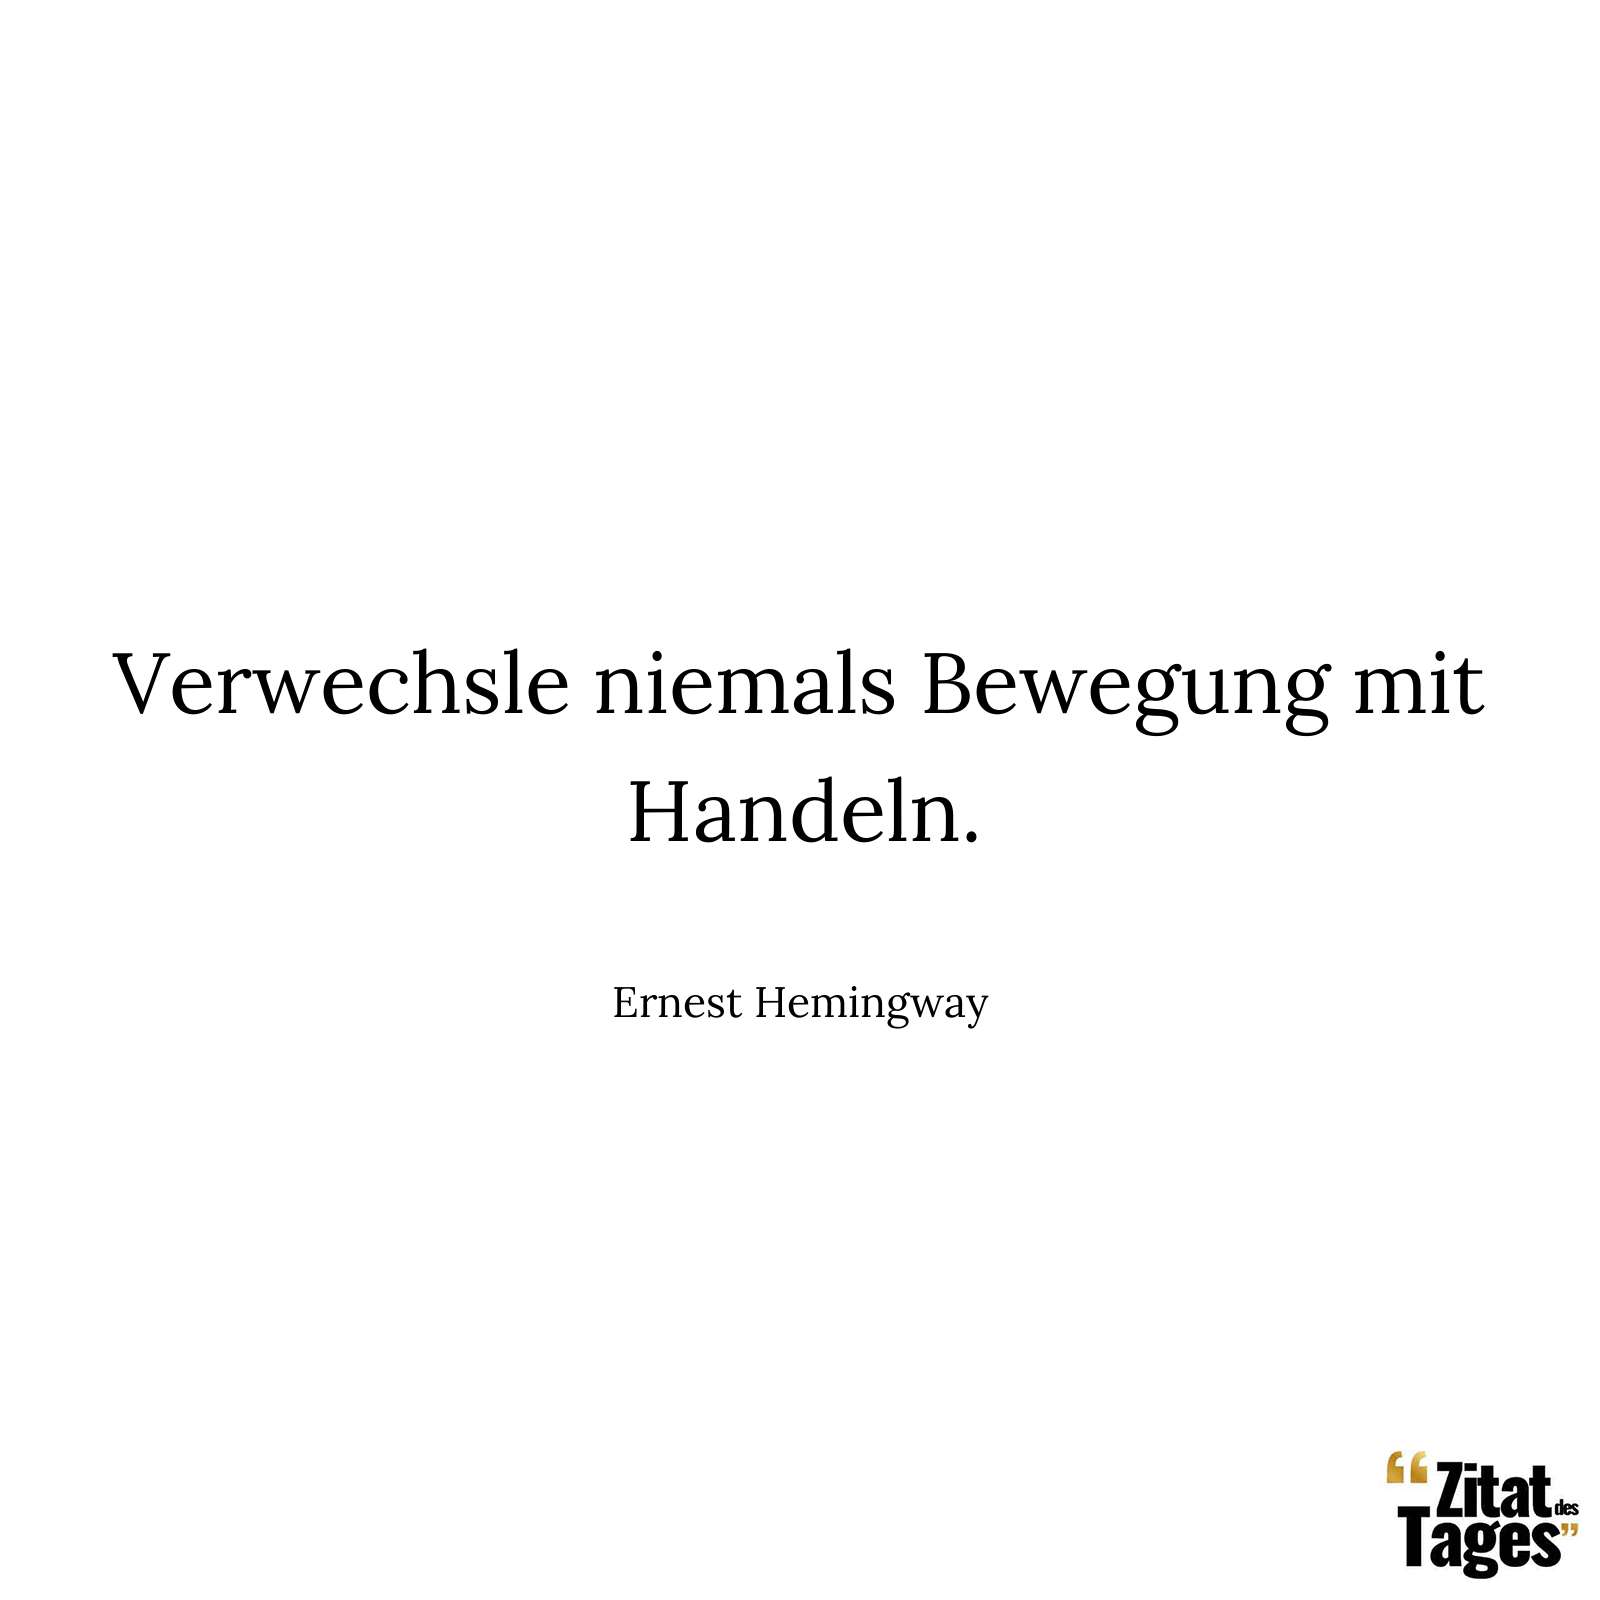 Verwechsle niemals Bewegung mit Handeln. - Ernest Hemingway